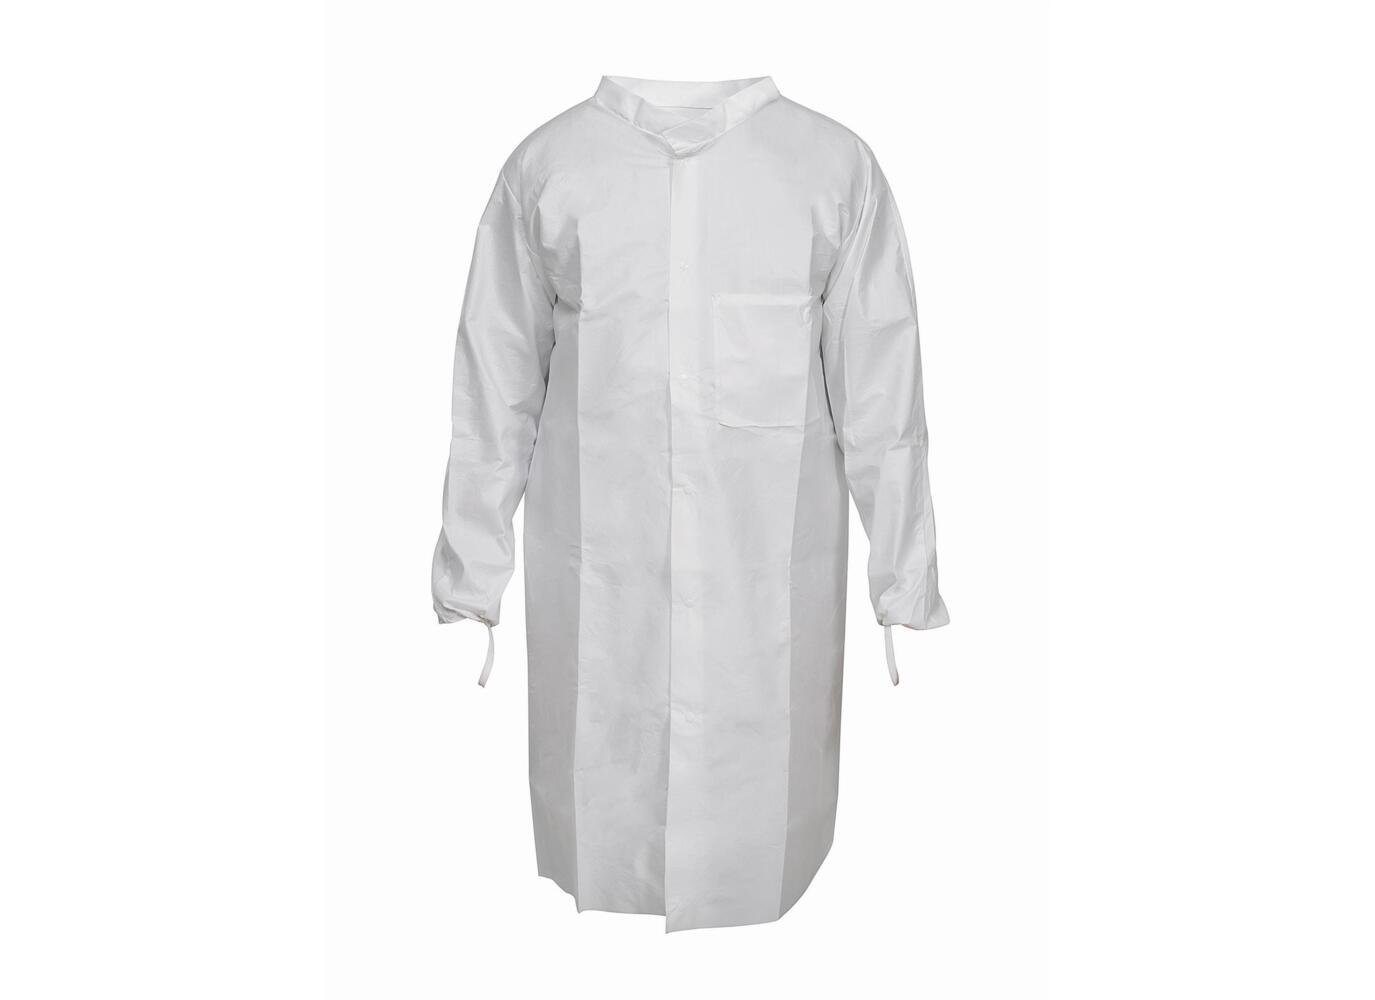 Kimtech™ A7 P+, Laboratory Coat 97720 - White, L, 1x15 (15 total) - 97720